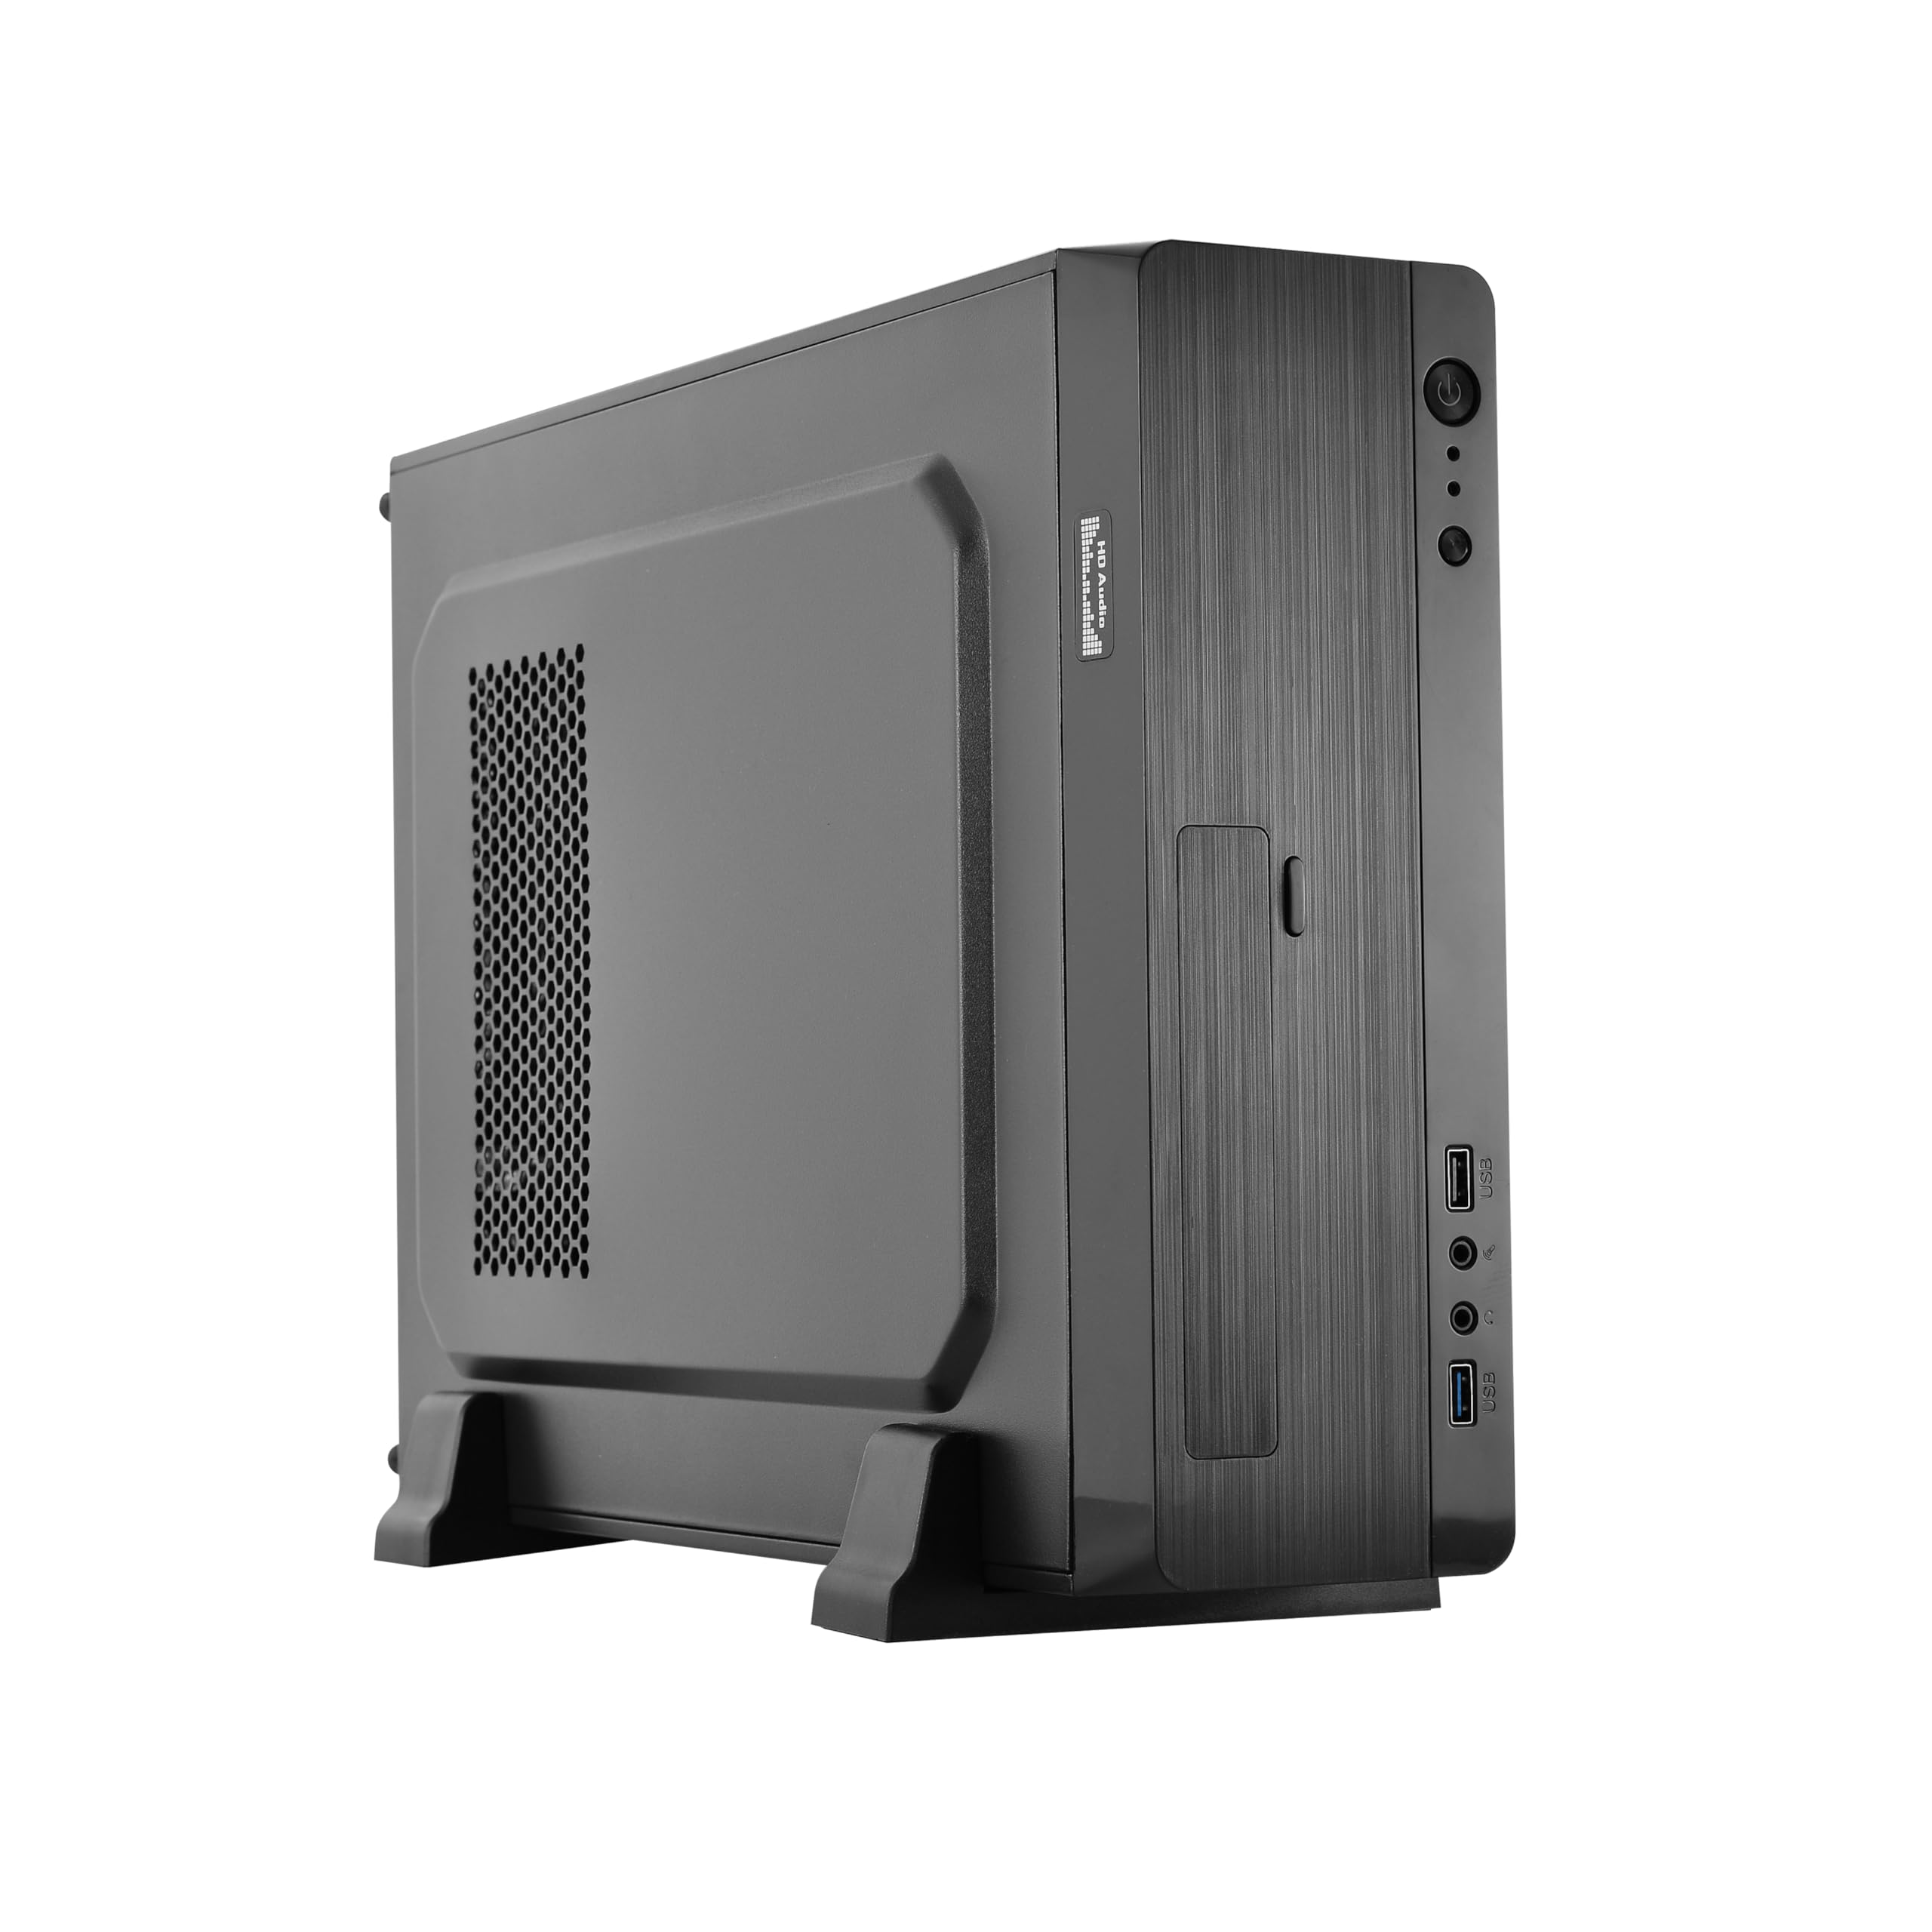 L-LINK ATX Slim PC-Gehäuse mit USB 3.0 Frontal | Netzteil 500 W | PC-Tower mit elegantem und langlebigem Design | Kompaktes Computergehäuse Modell: Magna